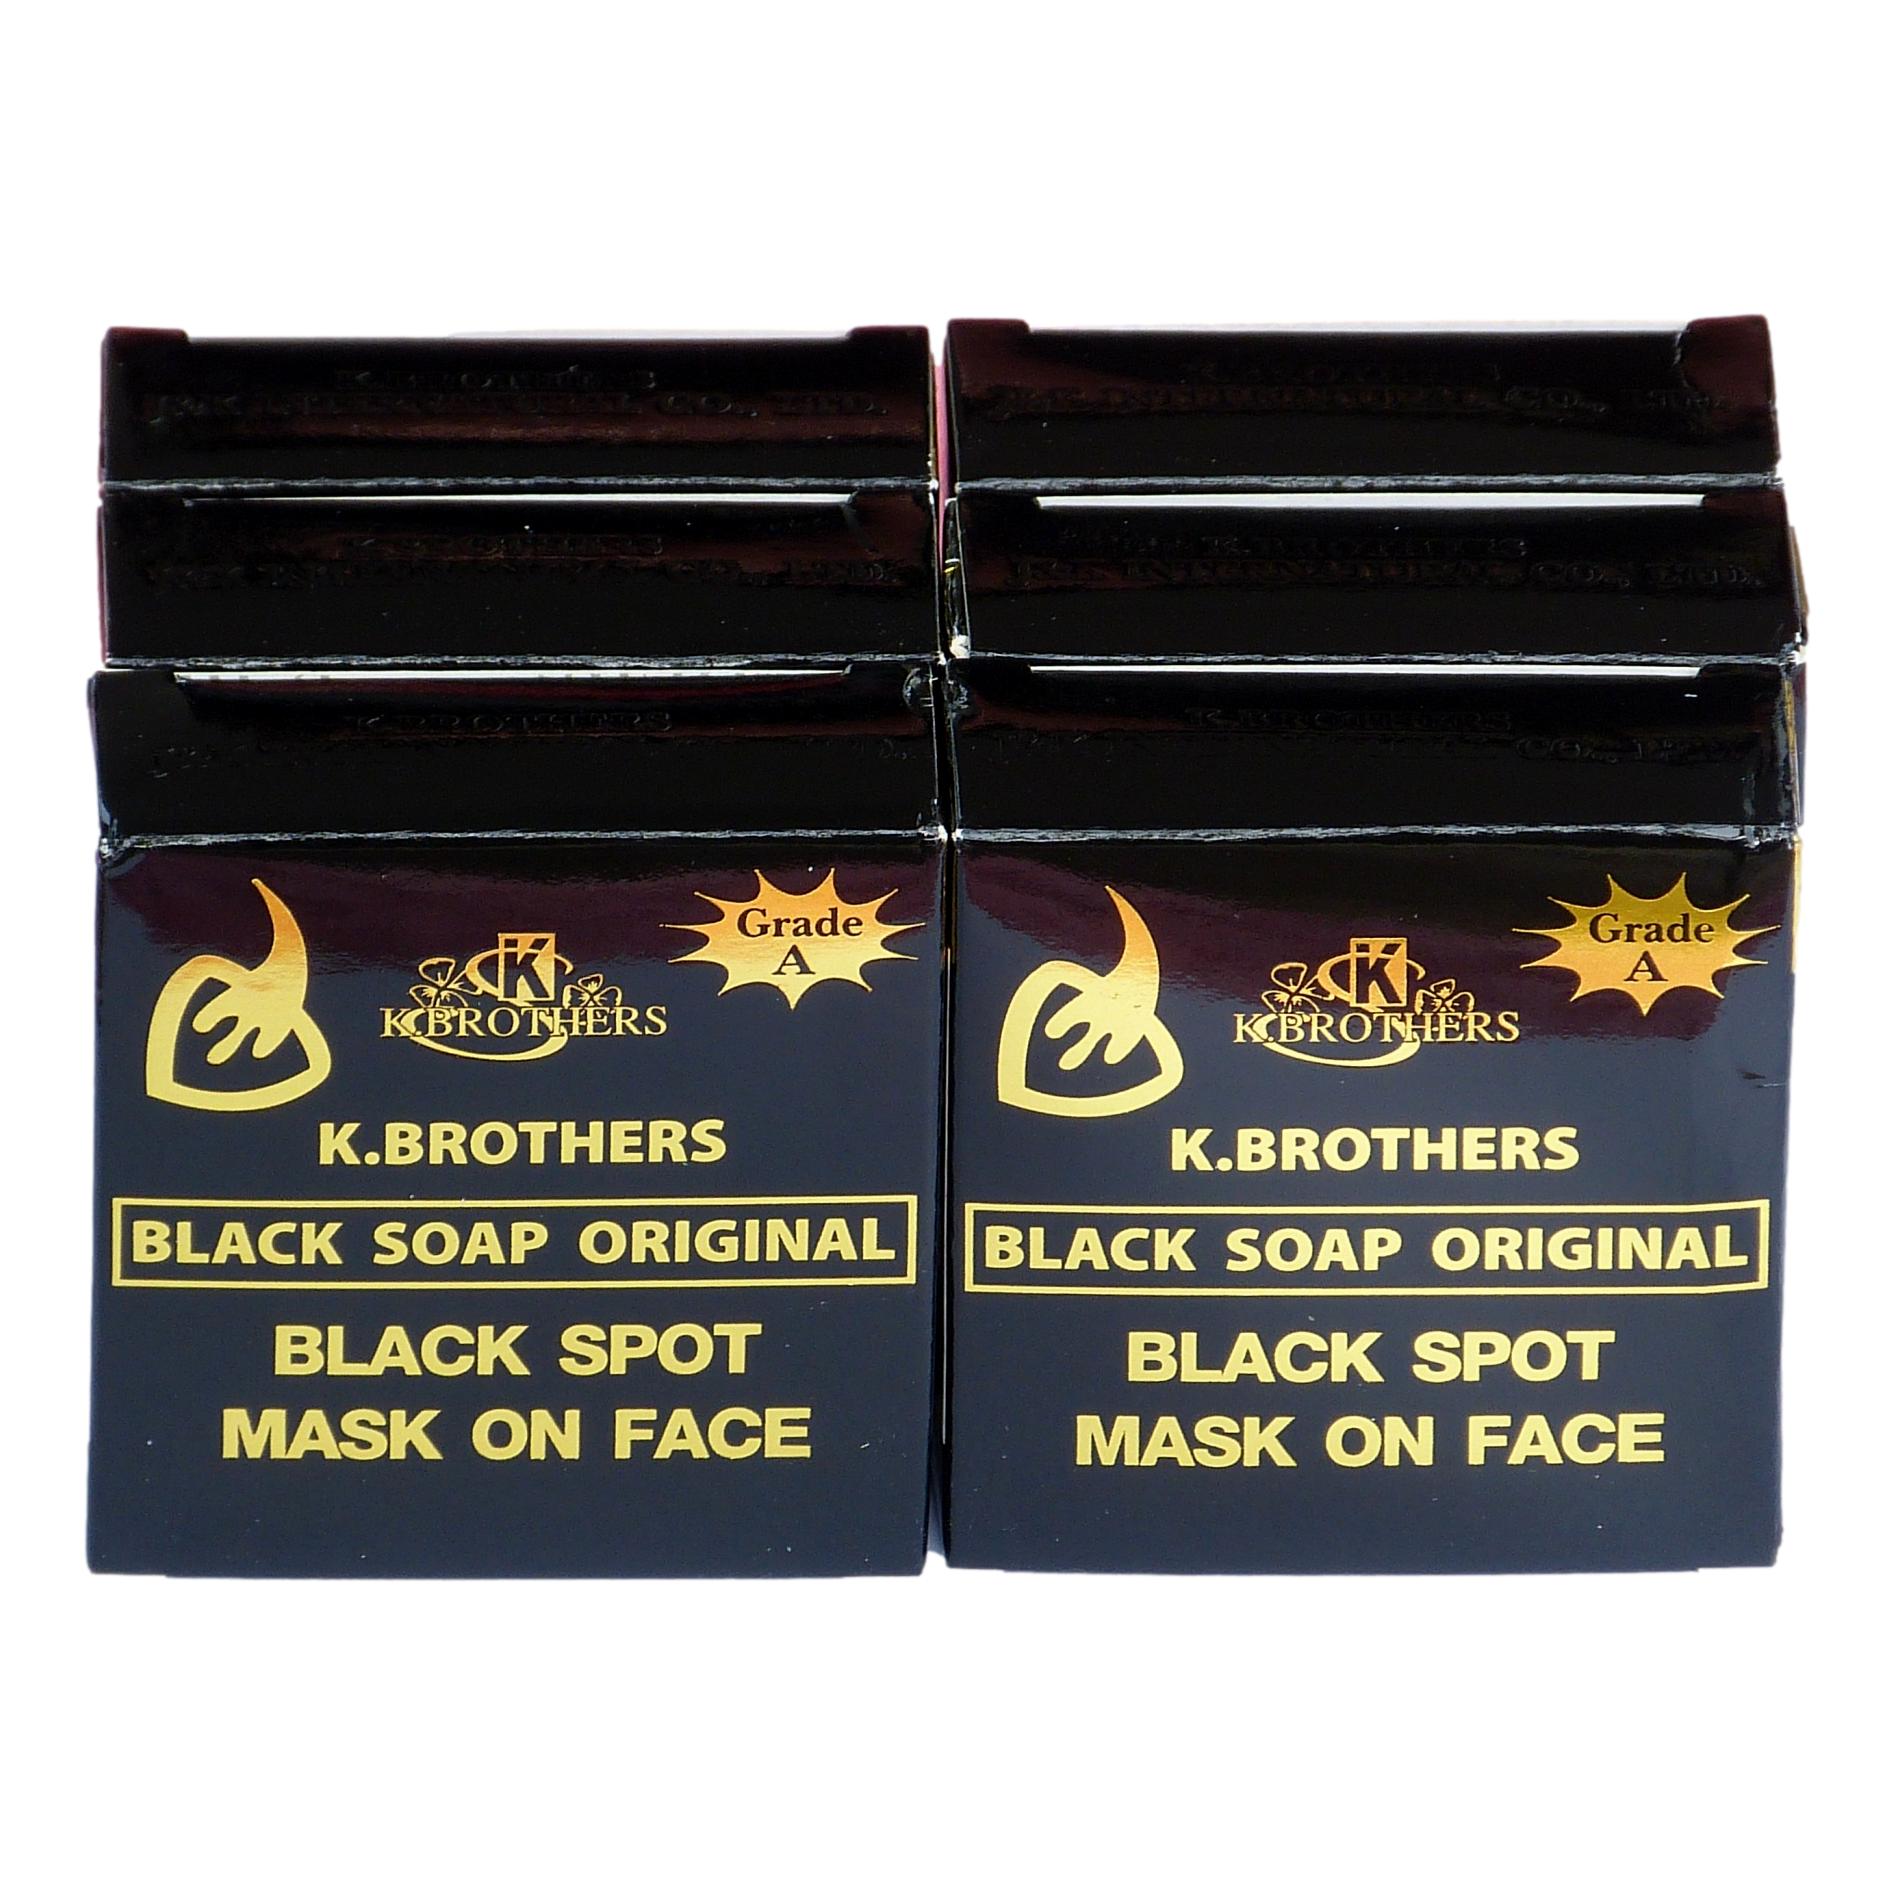 K.Brothers Original Black Soap 50g (Pack of 6)